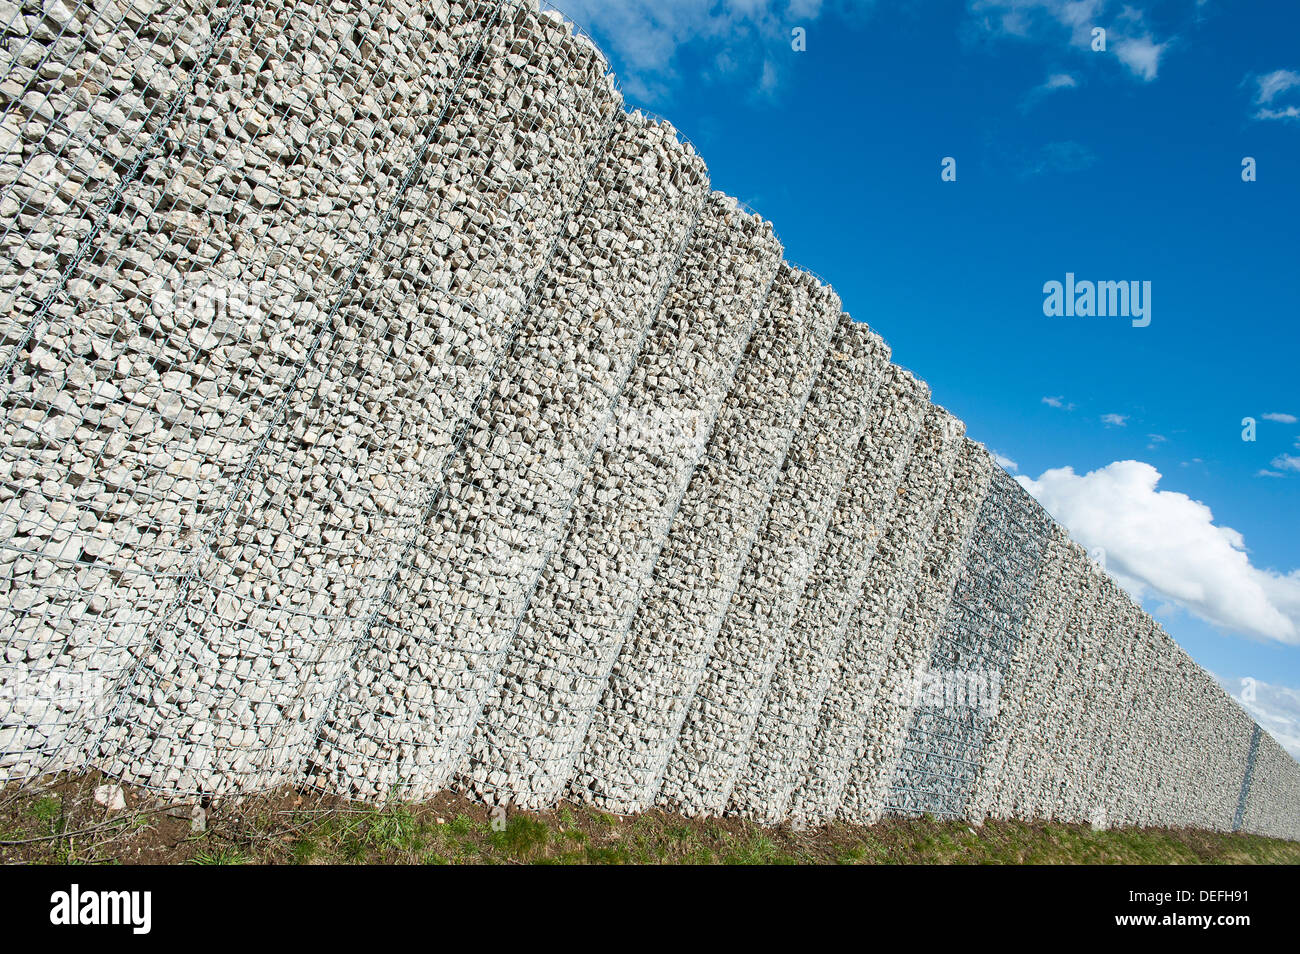 Mur de gabions, corbeilles filet rempli de pierres, mur de protection contre le bruit sur l'autoroute A9, Bavière, Allemagne Banque D'Images